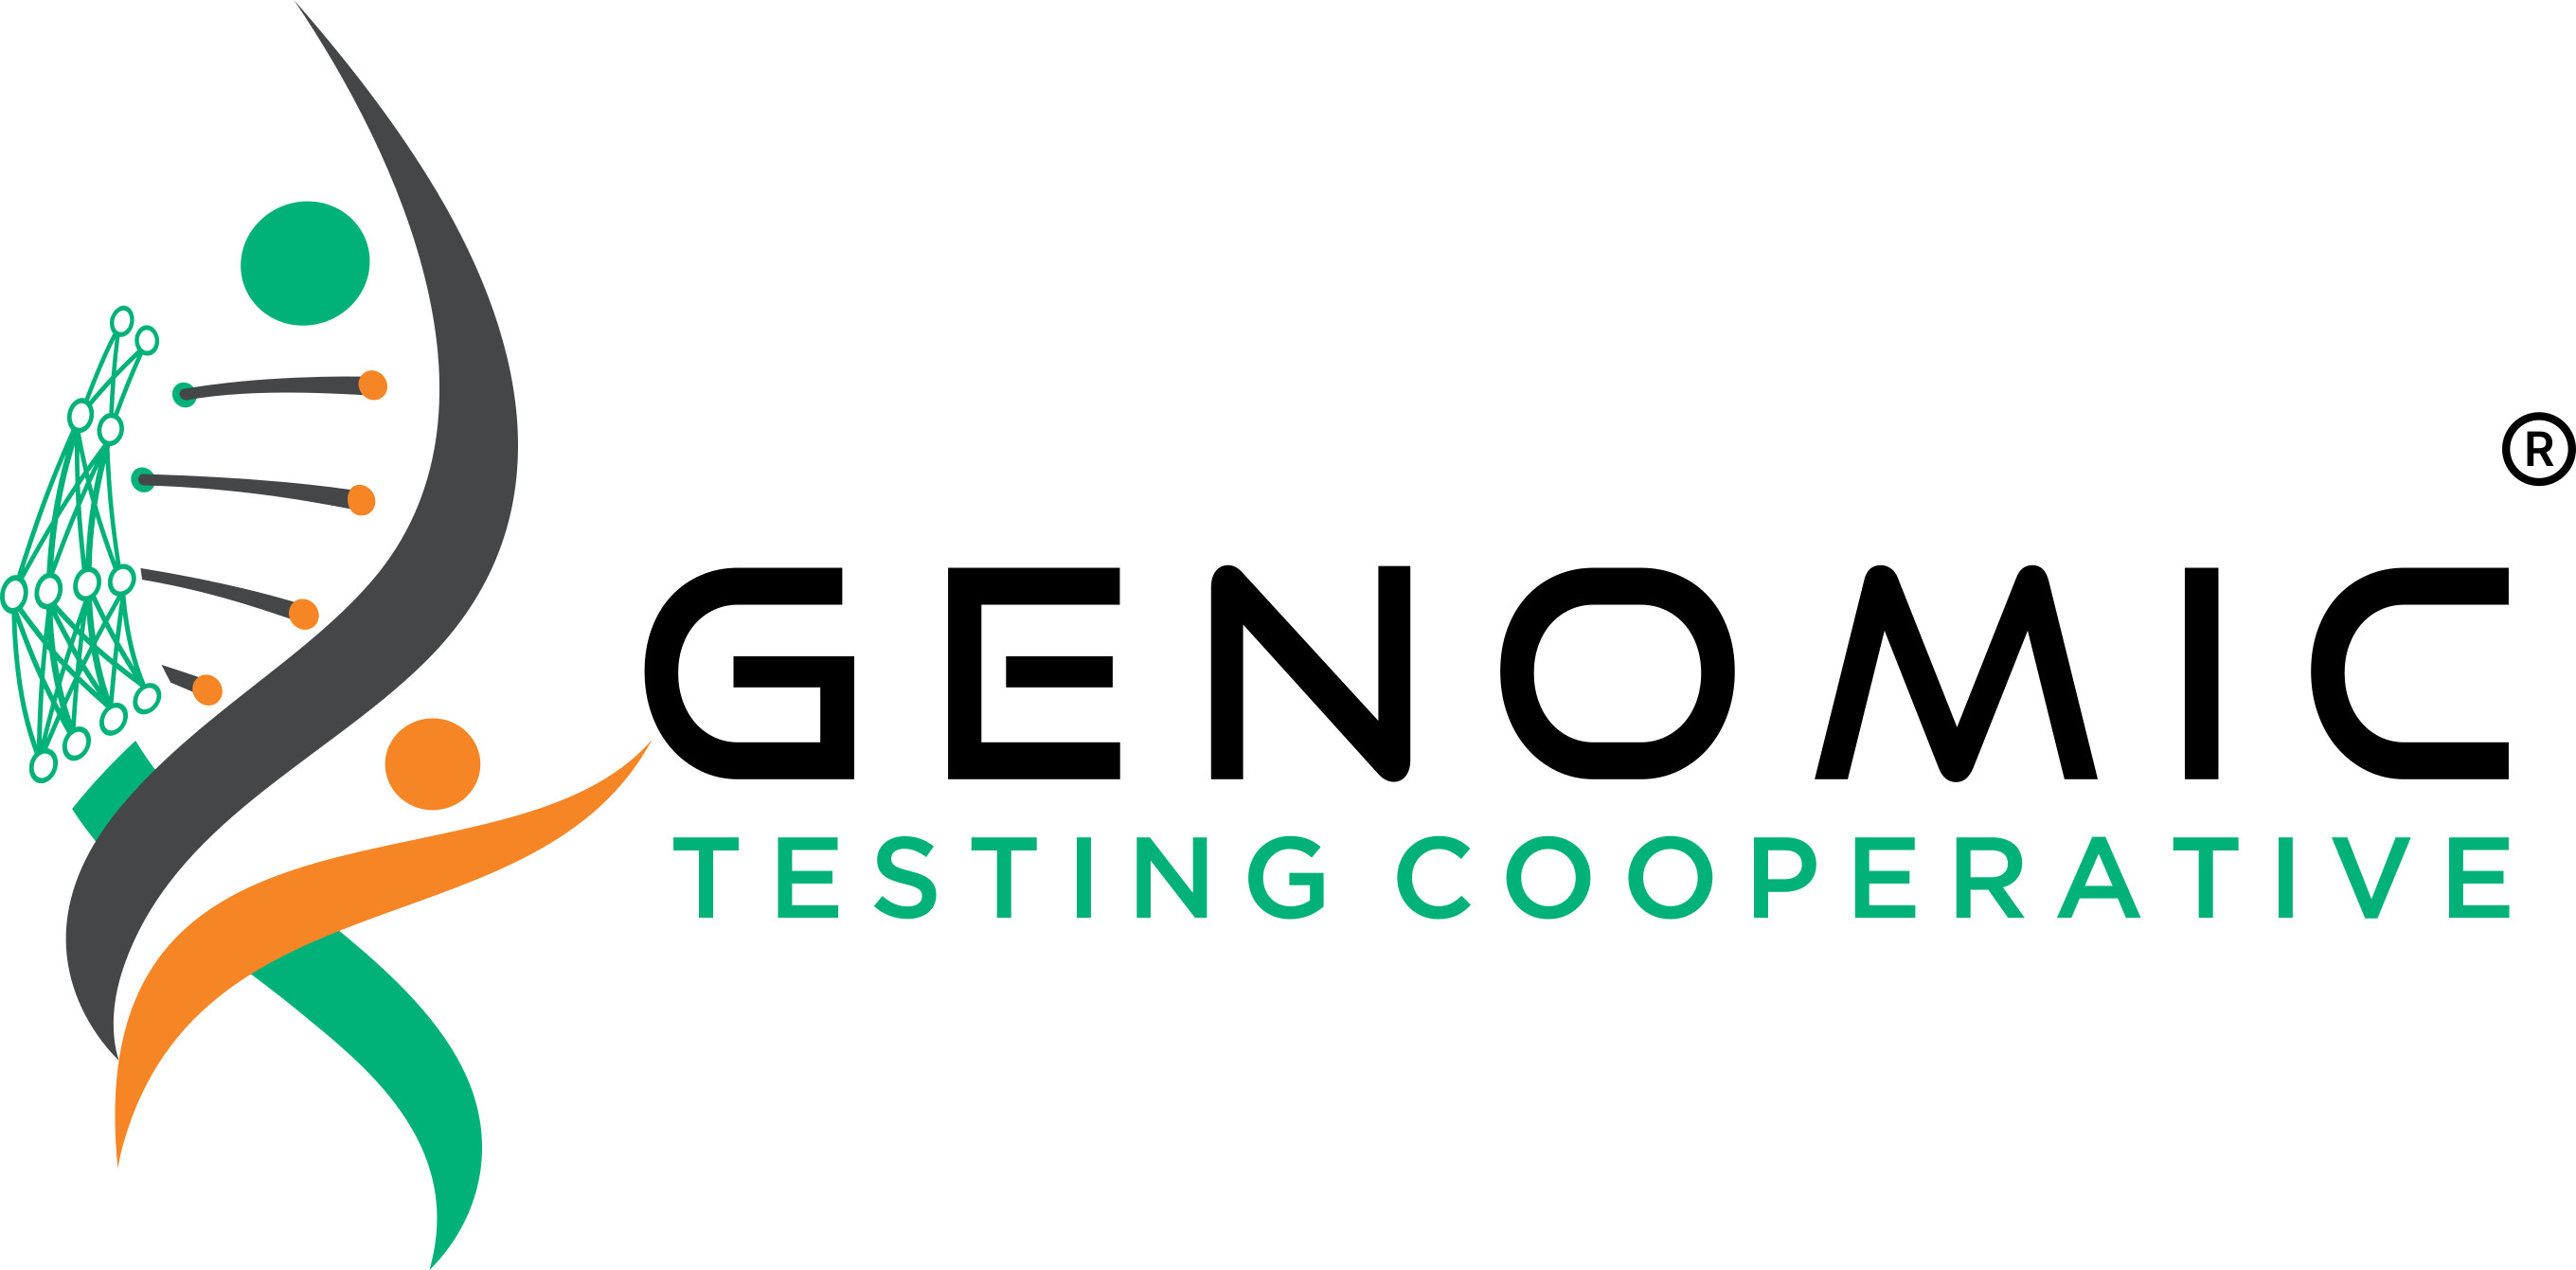 Genomic Testing Cooperative Logo